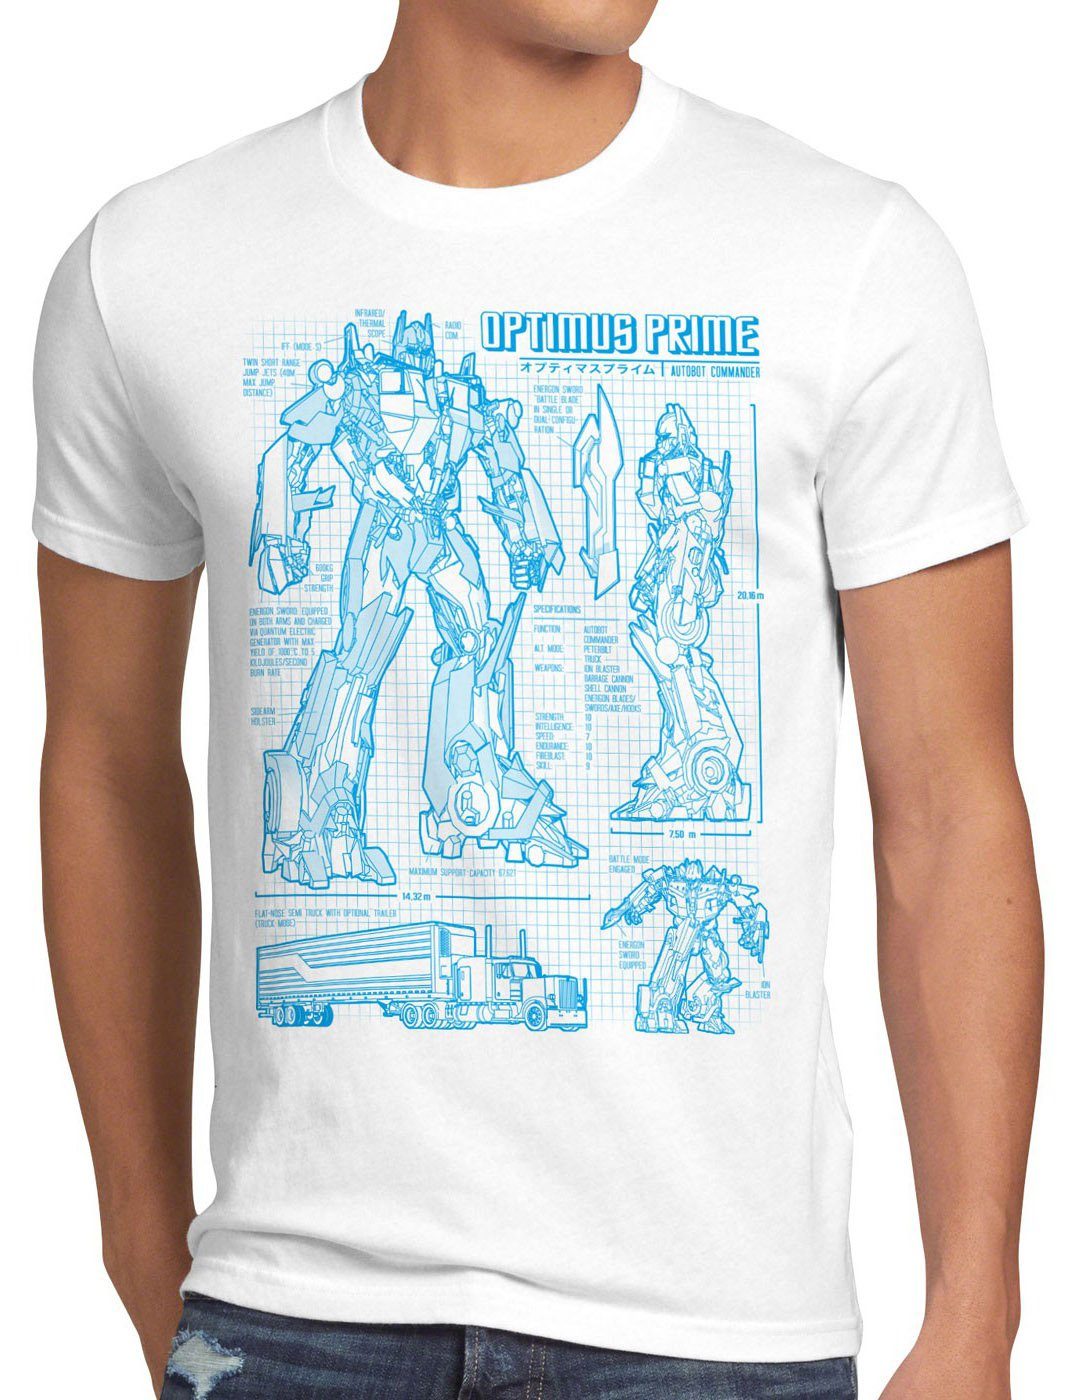 weiß Print-Shirt style3 Prime blaupause Herren Optimus autobot T-Shirt